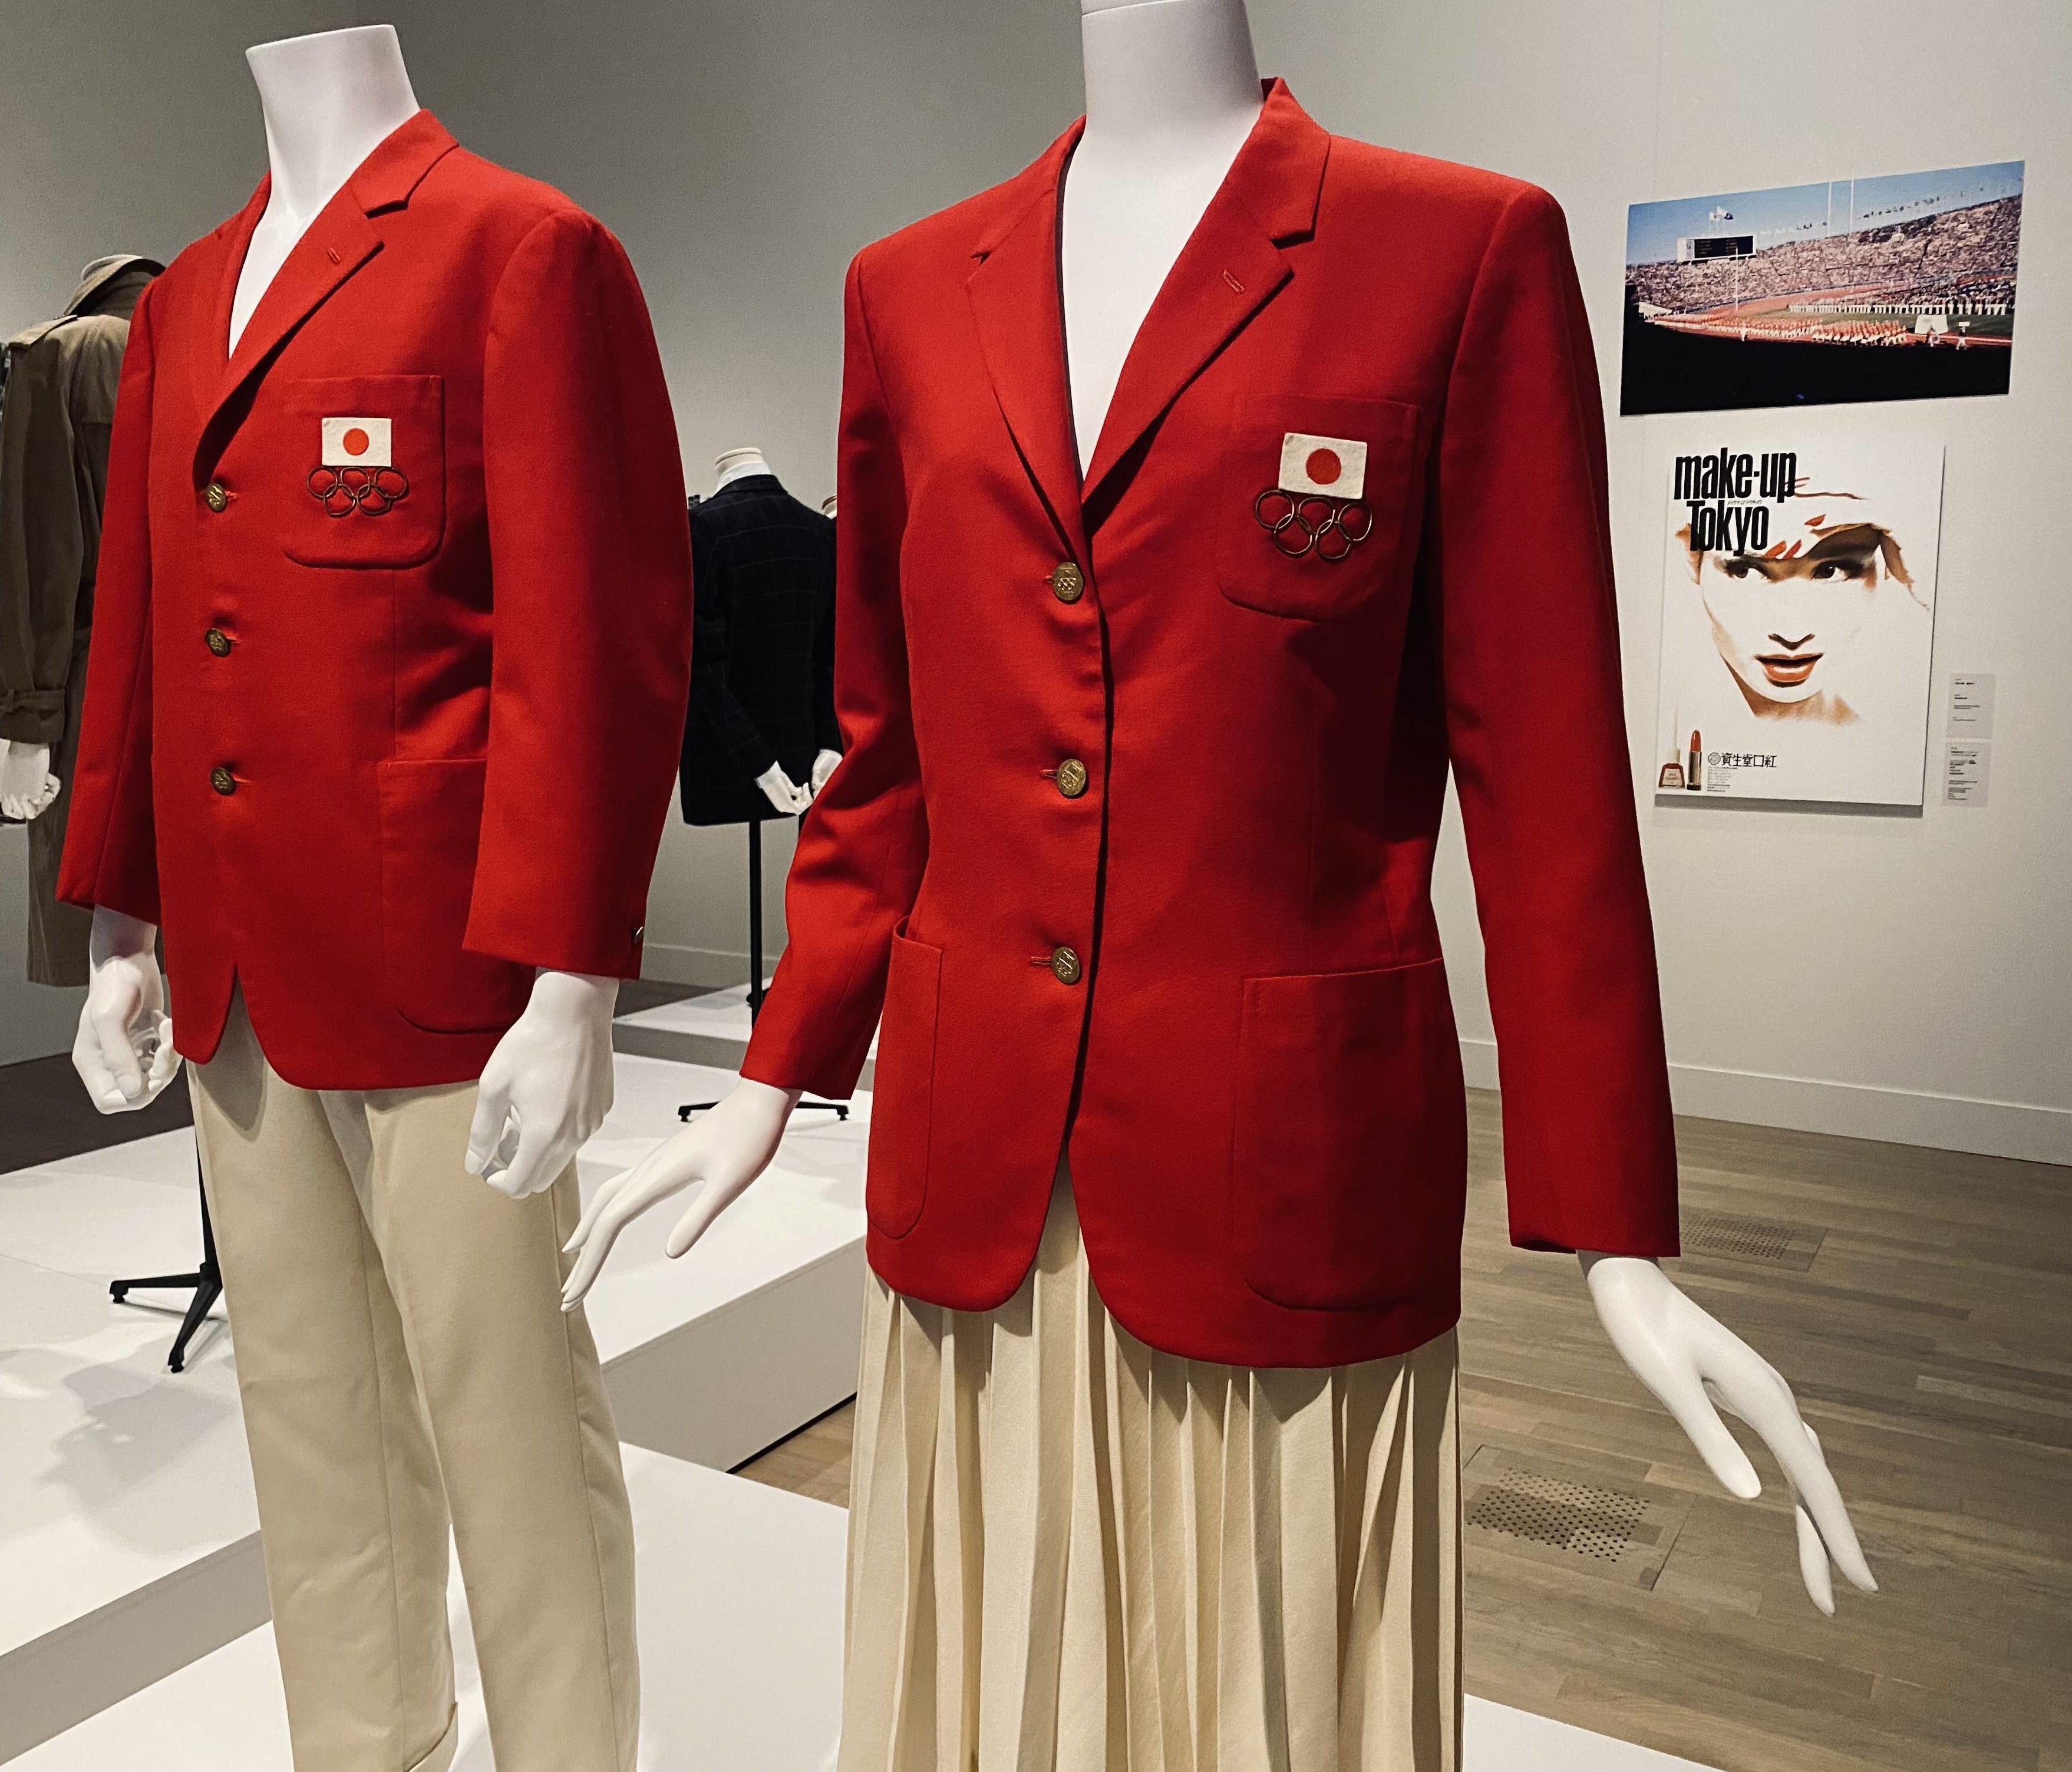 五輪赤白ユニホームの定番 ファッション イン ジャパン 展から考える 日本らしさ 産経ニュース